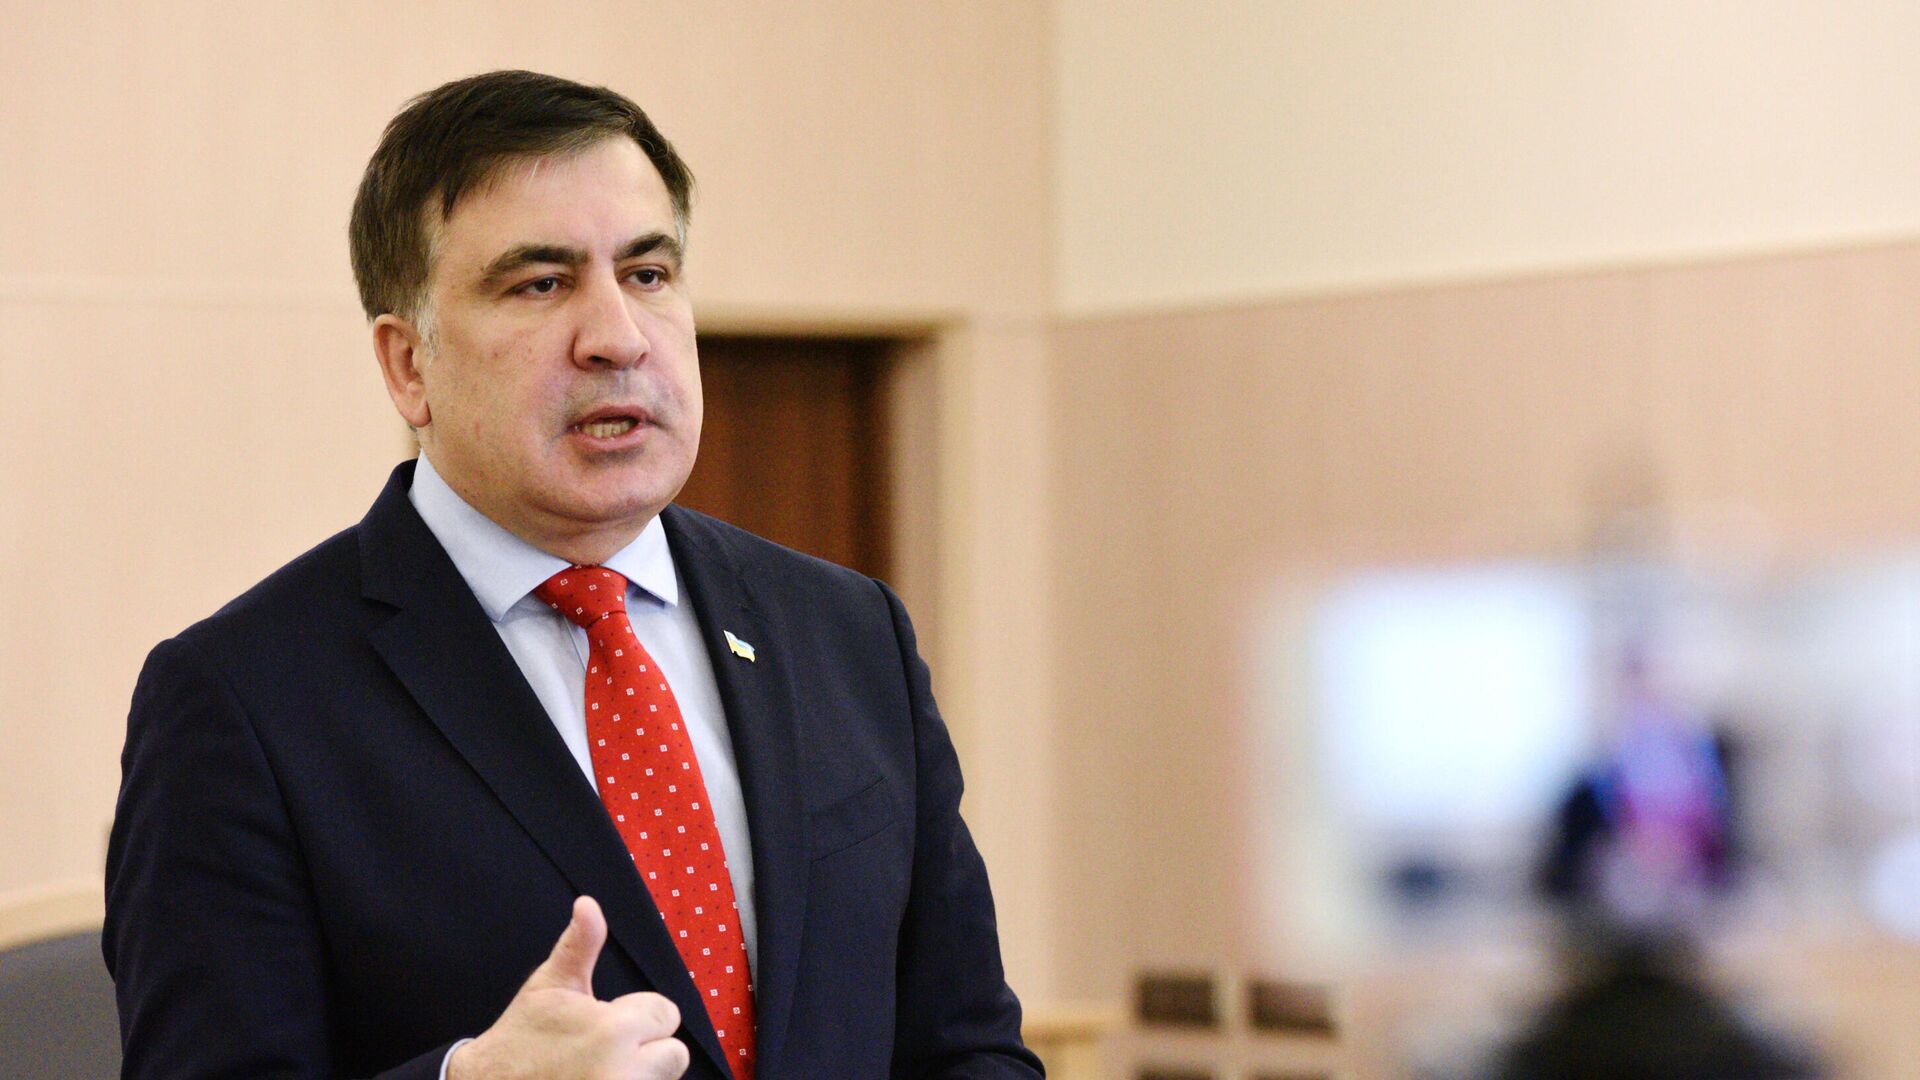 Экс-президент Грузии, бывший губернатор Одесской области Михаил Саакашвили  - Sputnik Азербайджан, 1920, 14.11.2021